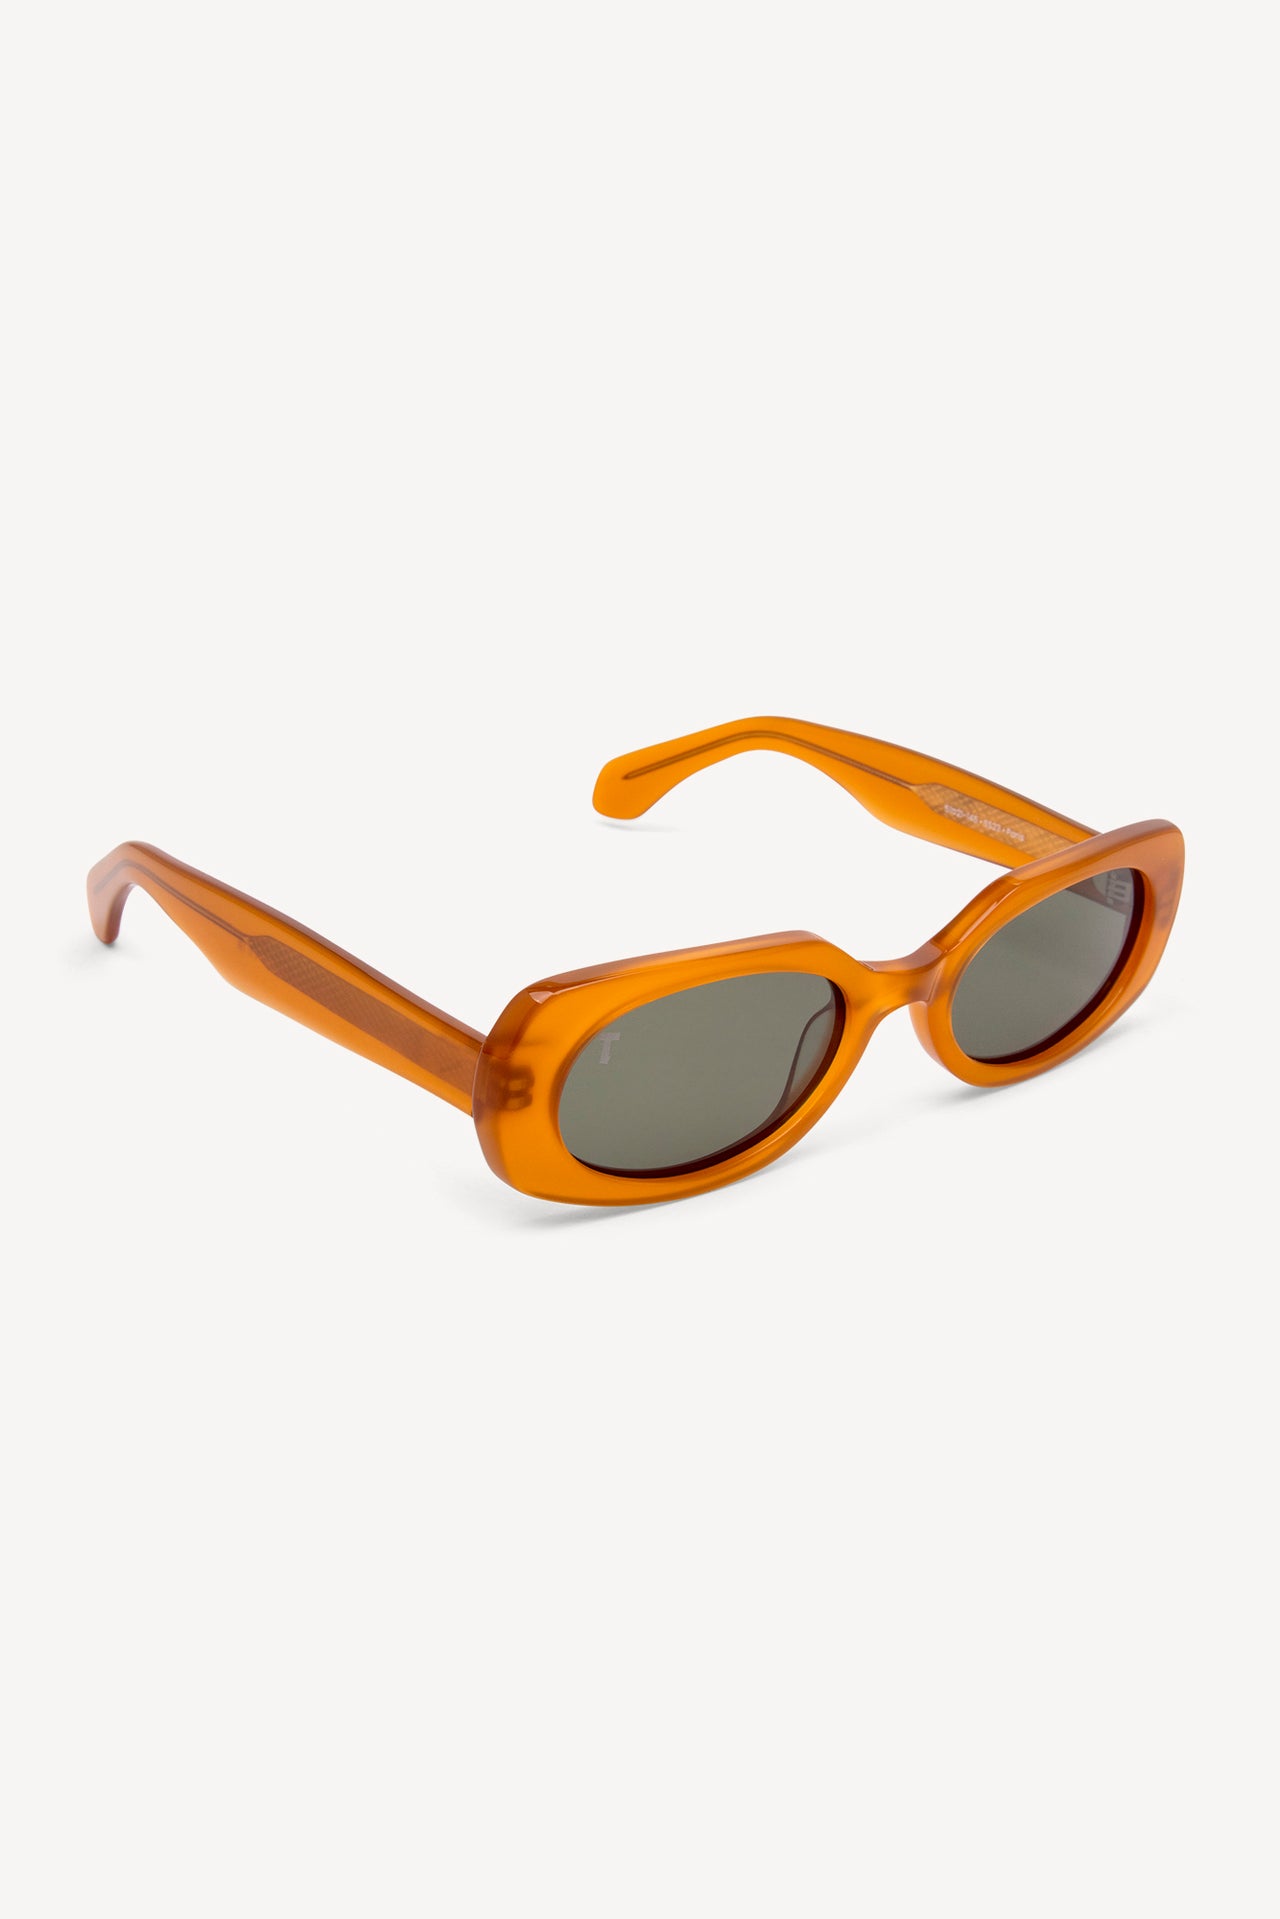 TOATIE Paris Rectangular Sunglasses ORANGE/GREEN